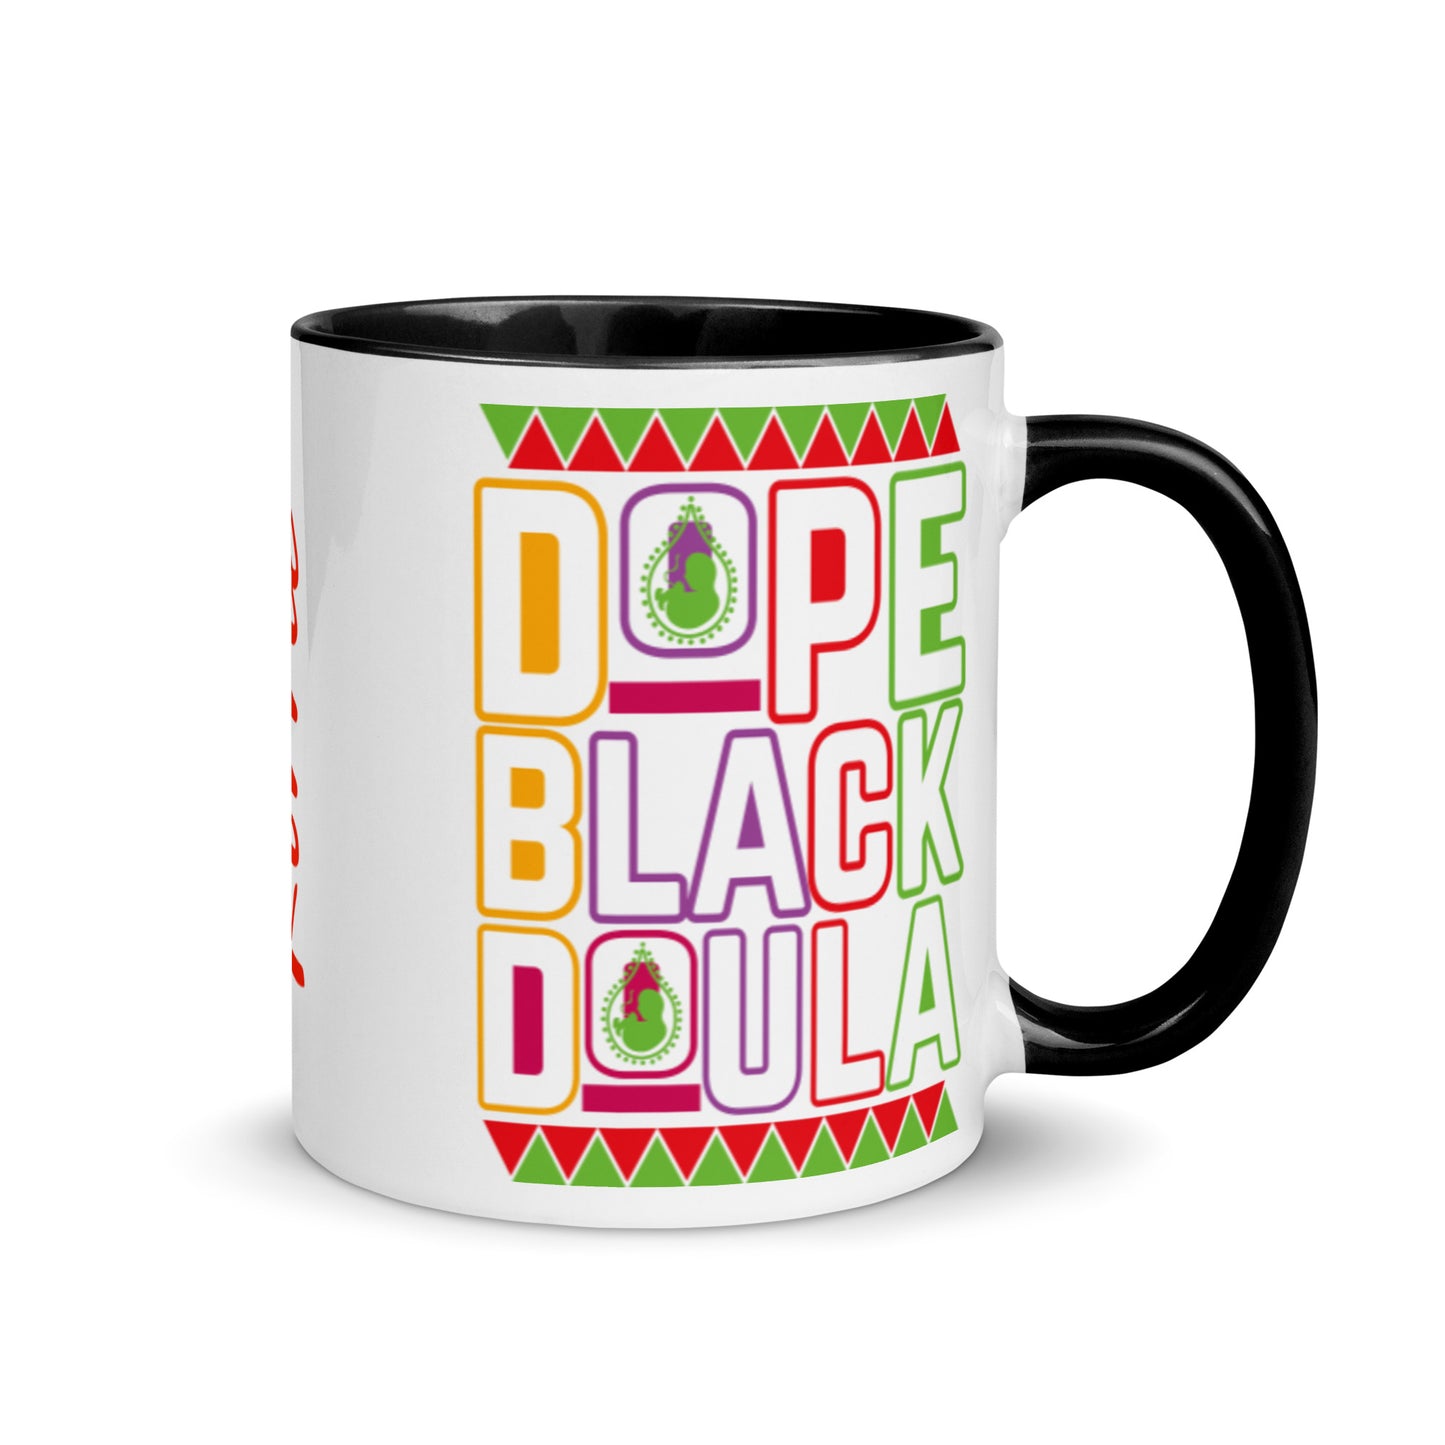 Dope Black Doula Mug